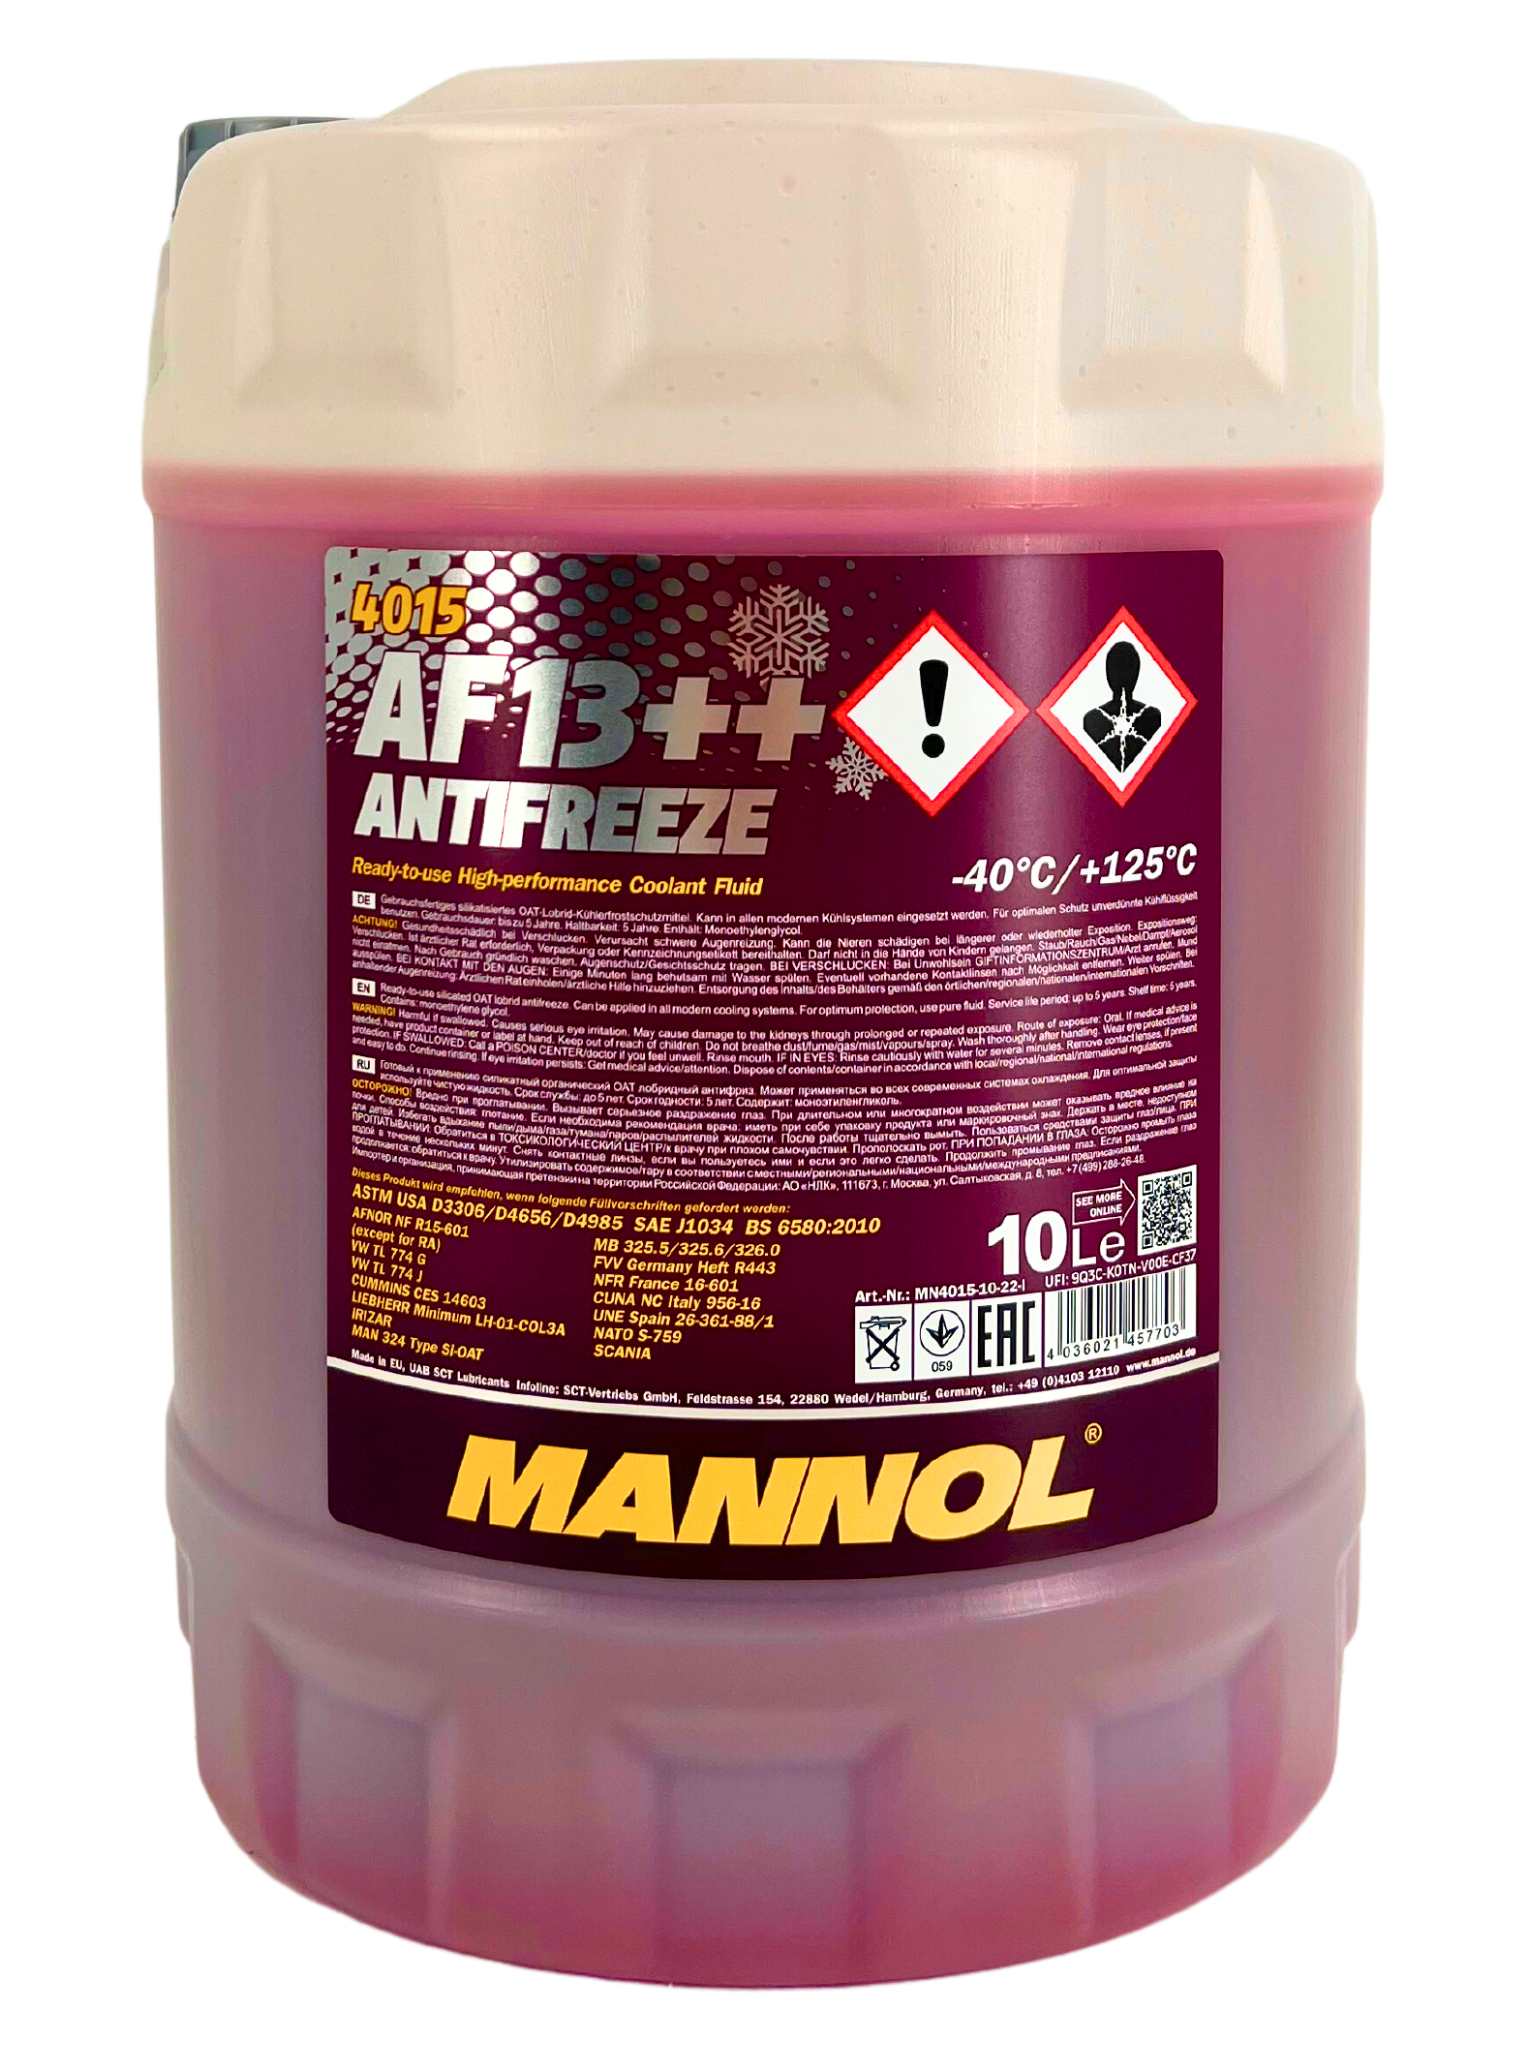 Mannol Antifreeze Kühlerfrostschutz AF13++ (-40 °C) 10 Liter